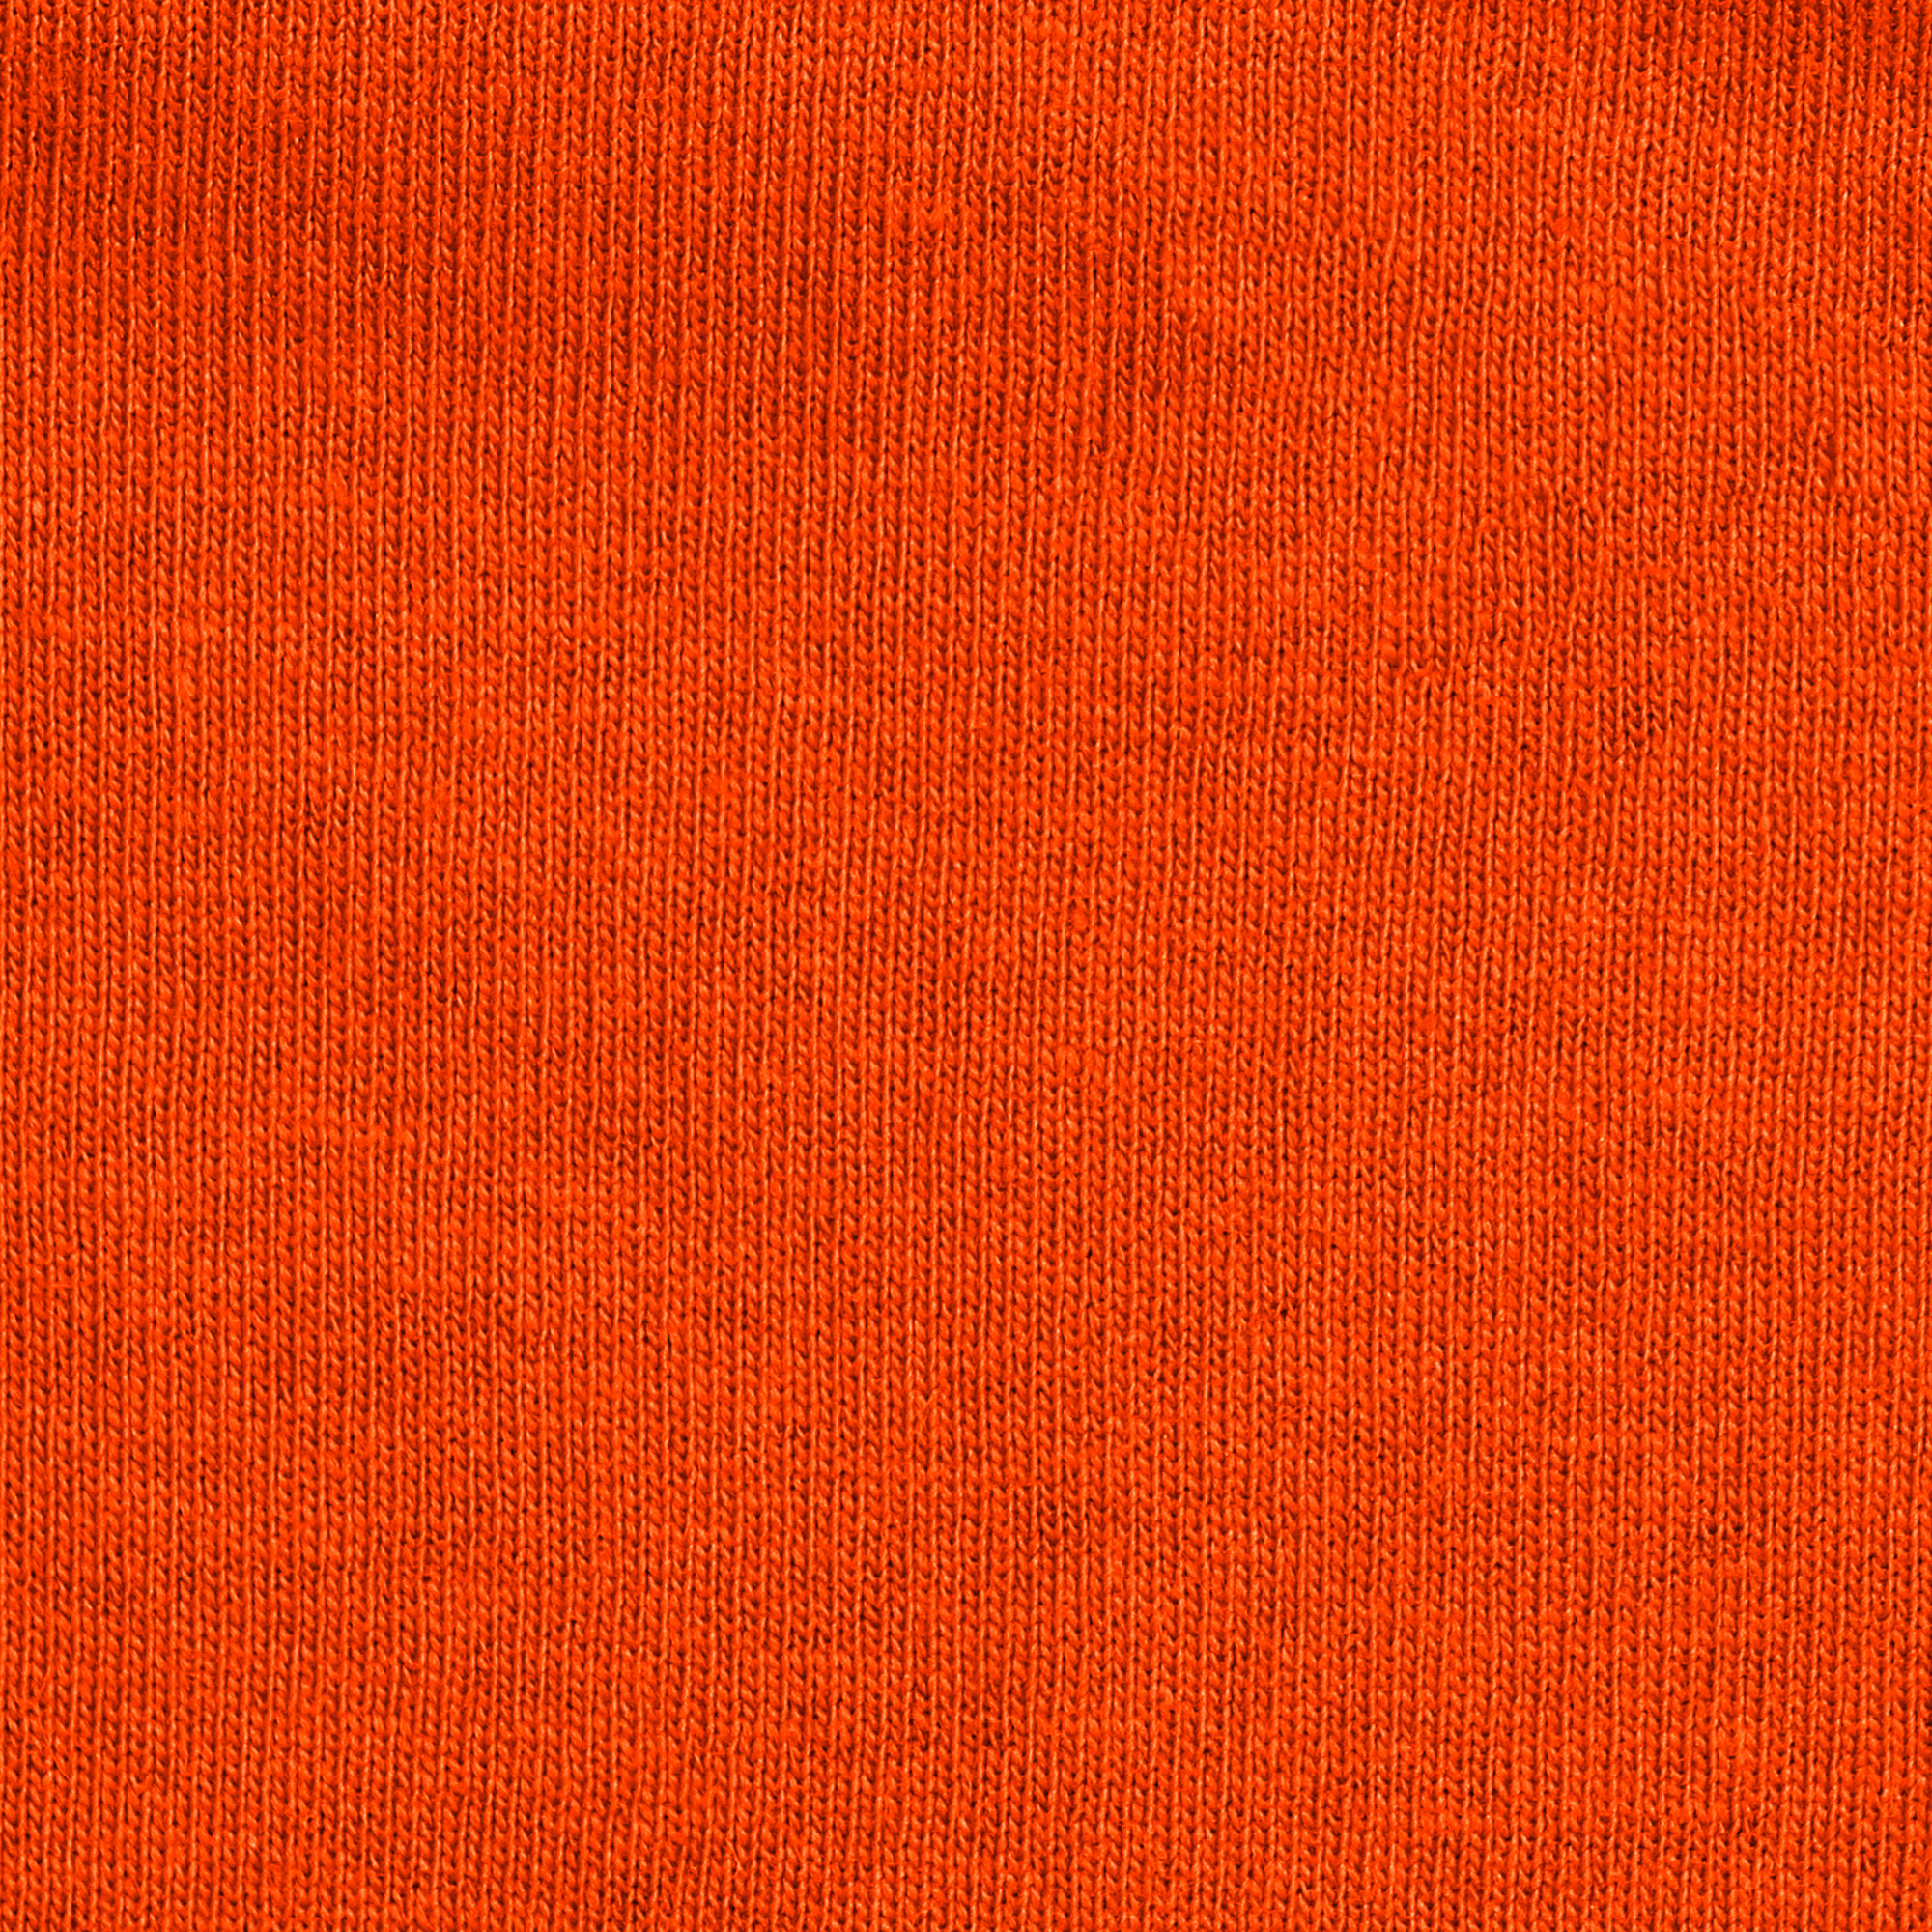 Футболка мужская M-1 Promo оранжевая с коротким рукавом XL, цвет оранжевый, размер XL - фото 3